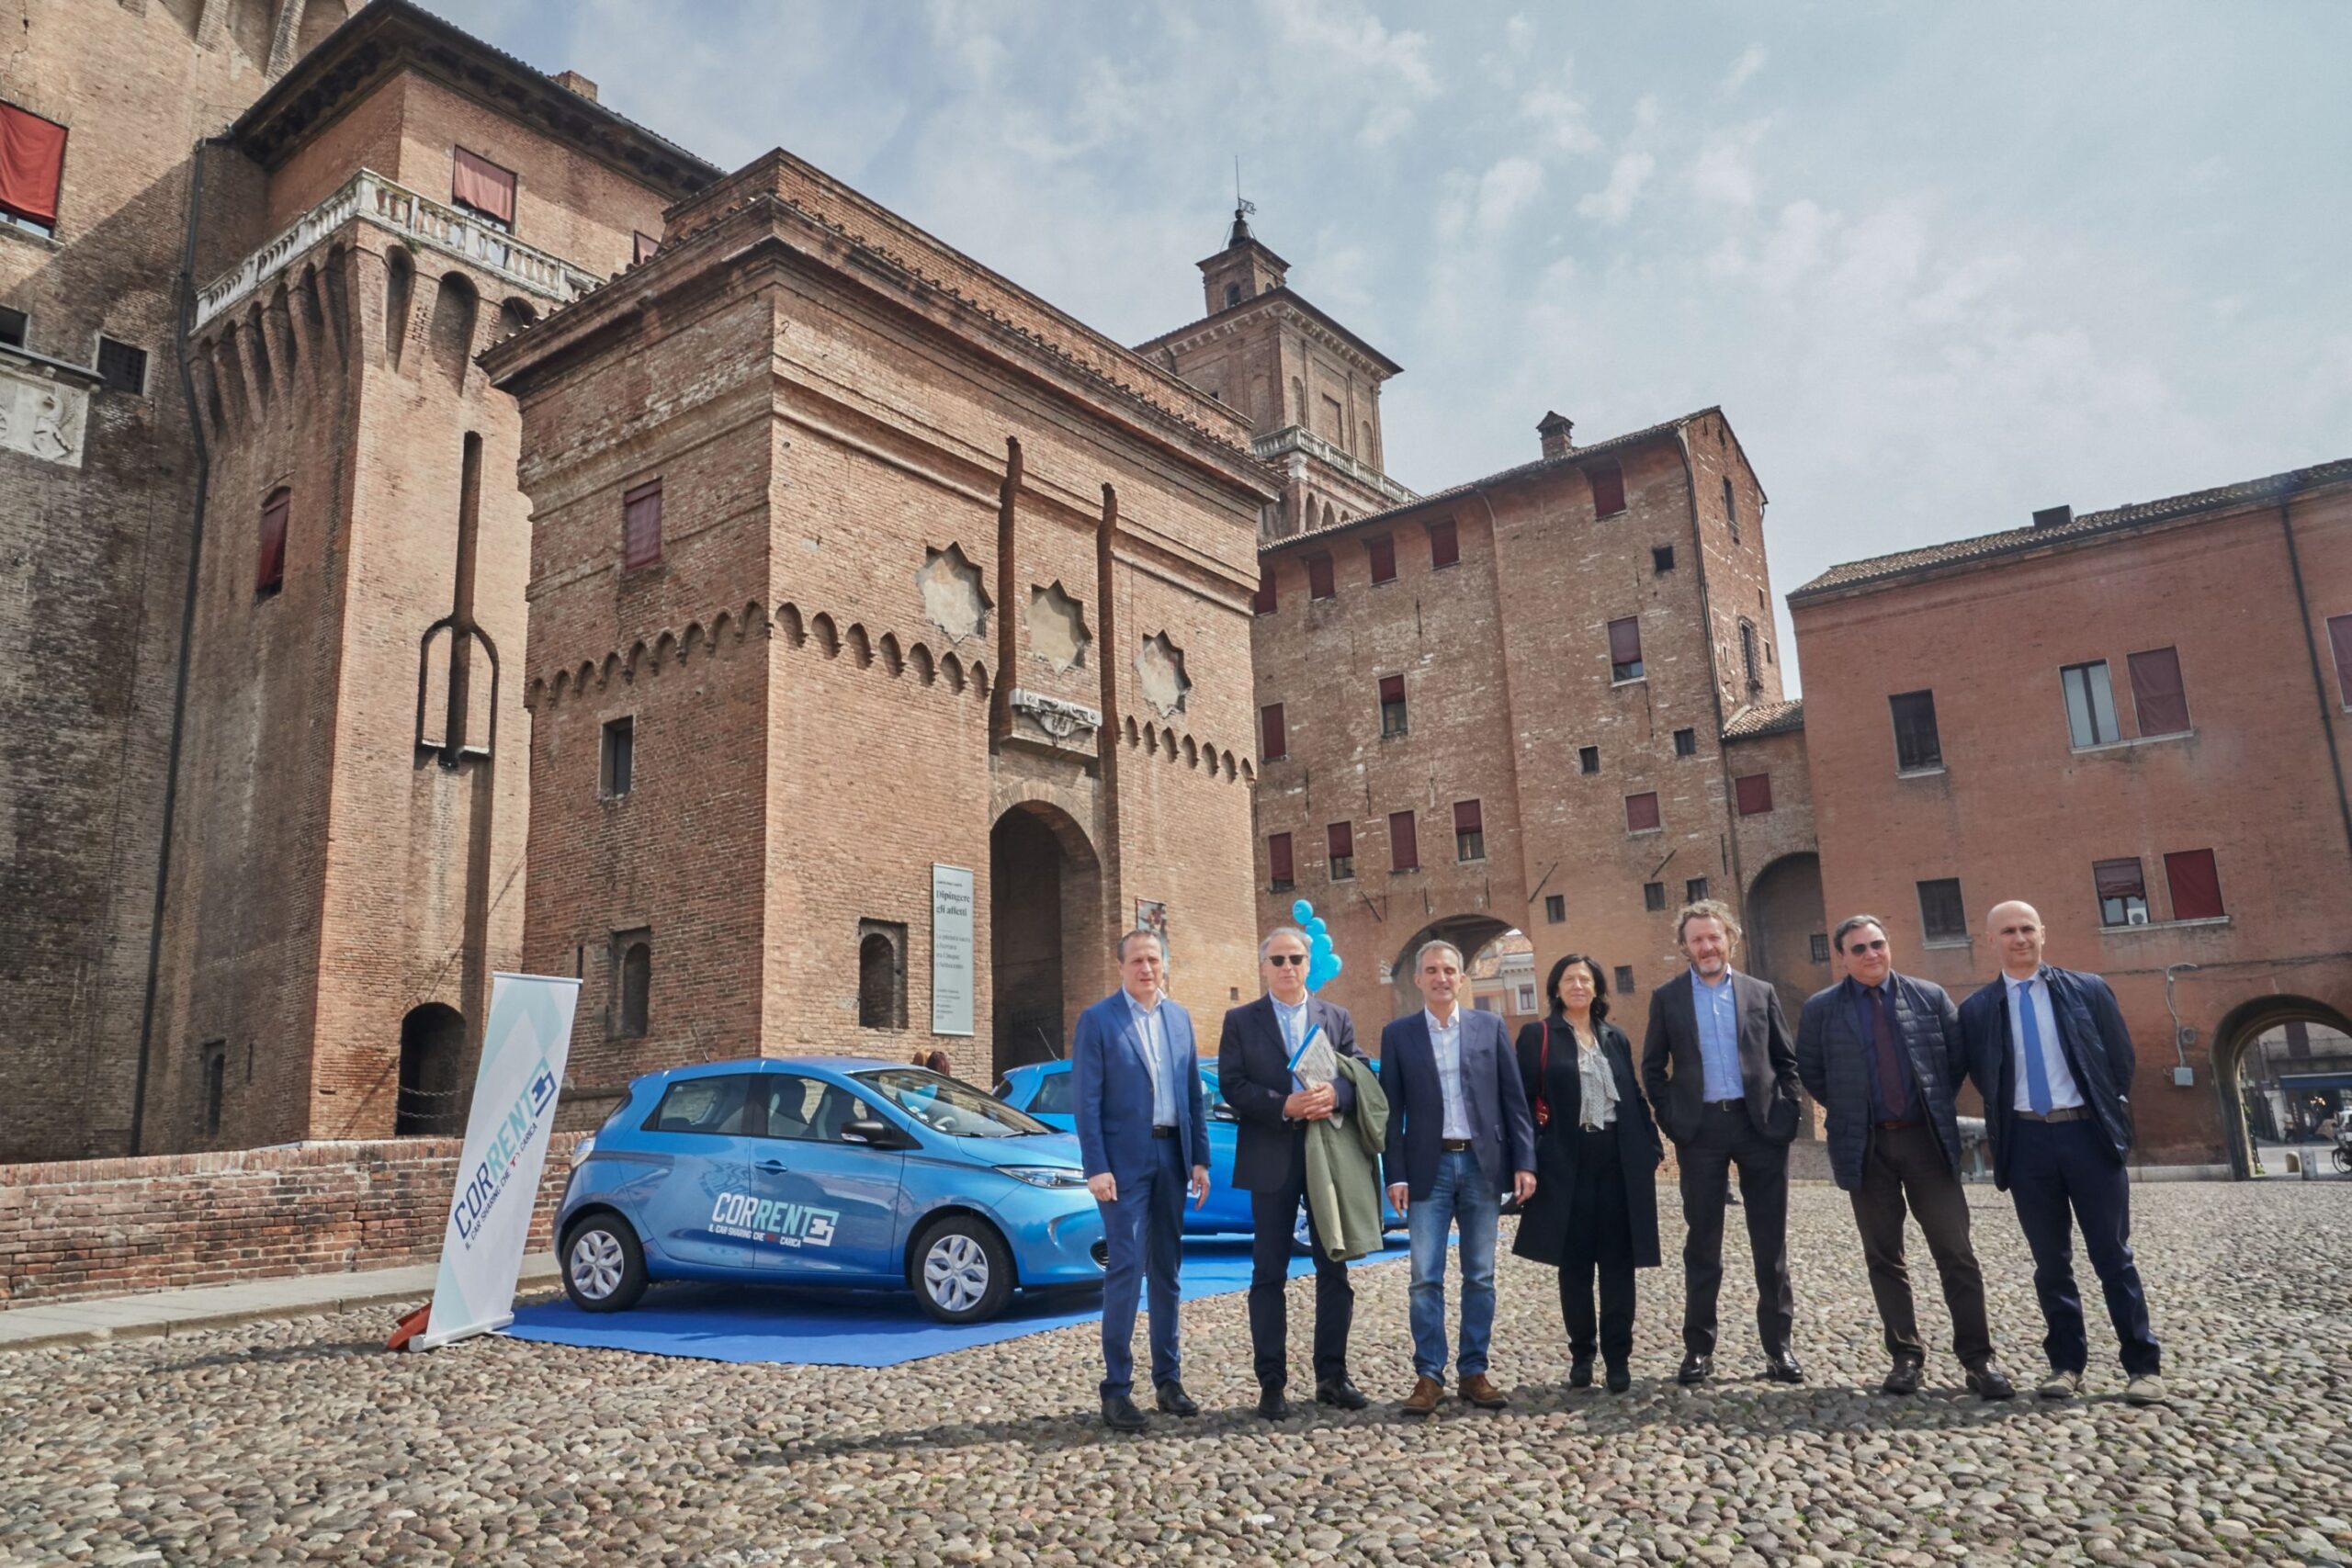 Renault e Tper presentano Corrente, un nuovo servizio di car sharing 100% elettrico